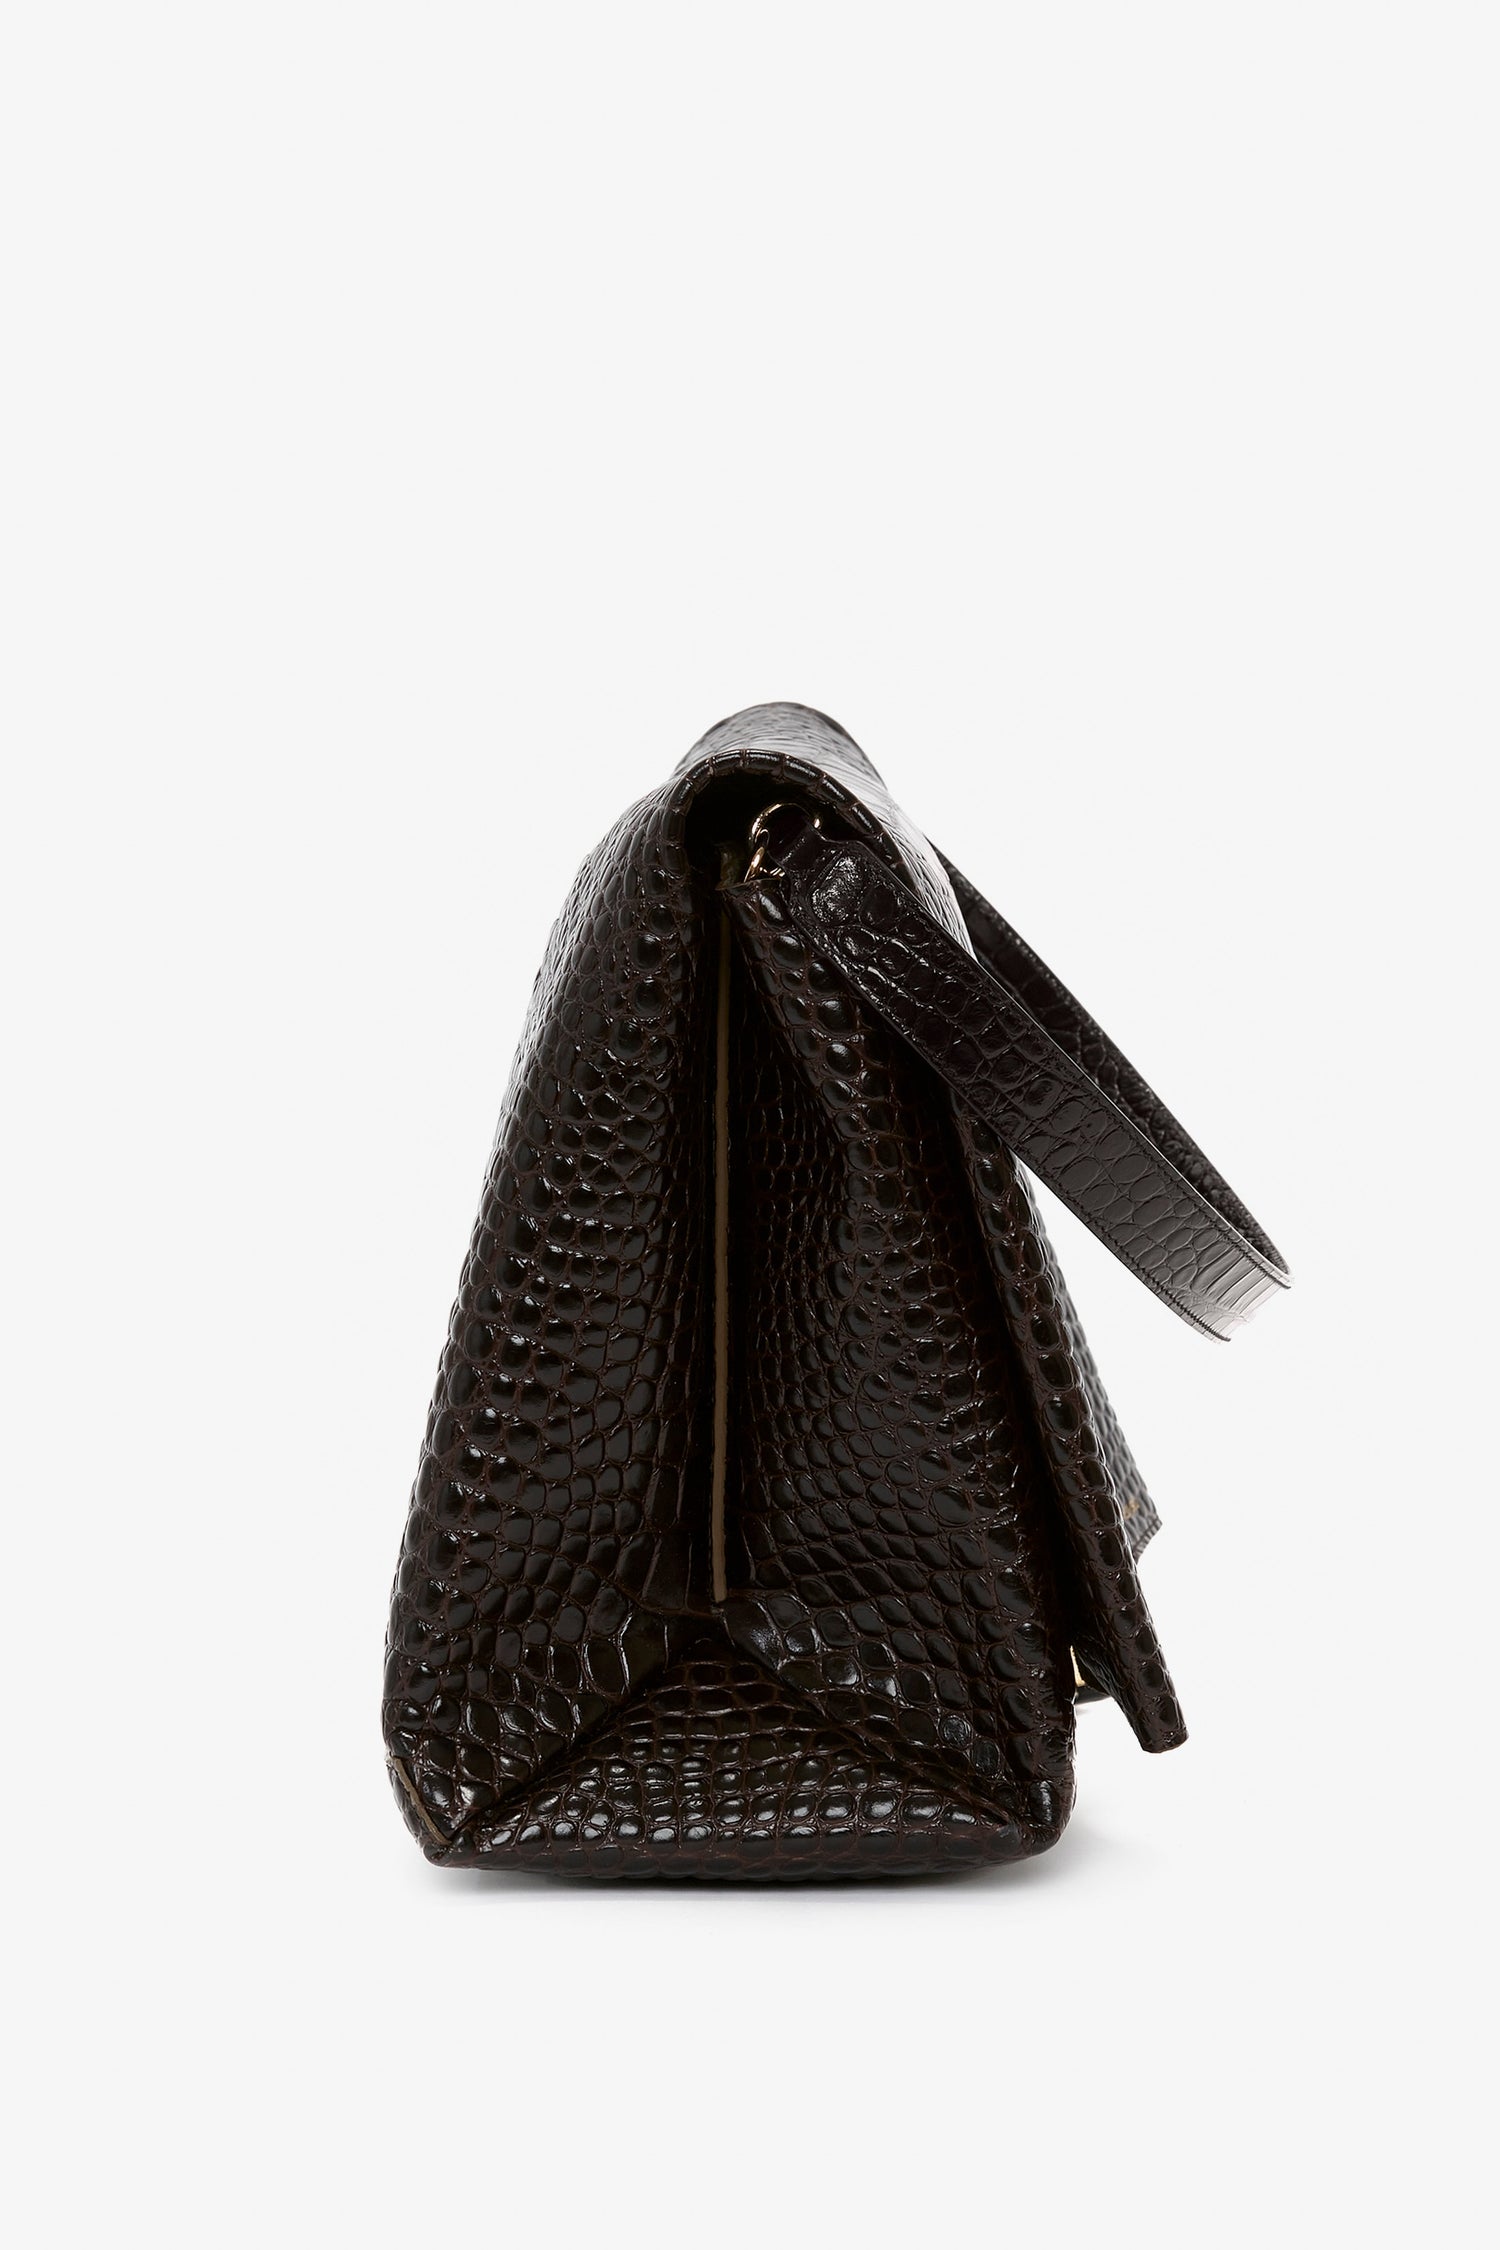 Louis Quatorze Hobo Bag (Dark Choco Brown color), Women's Fashion